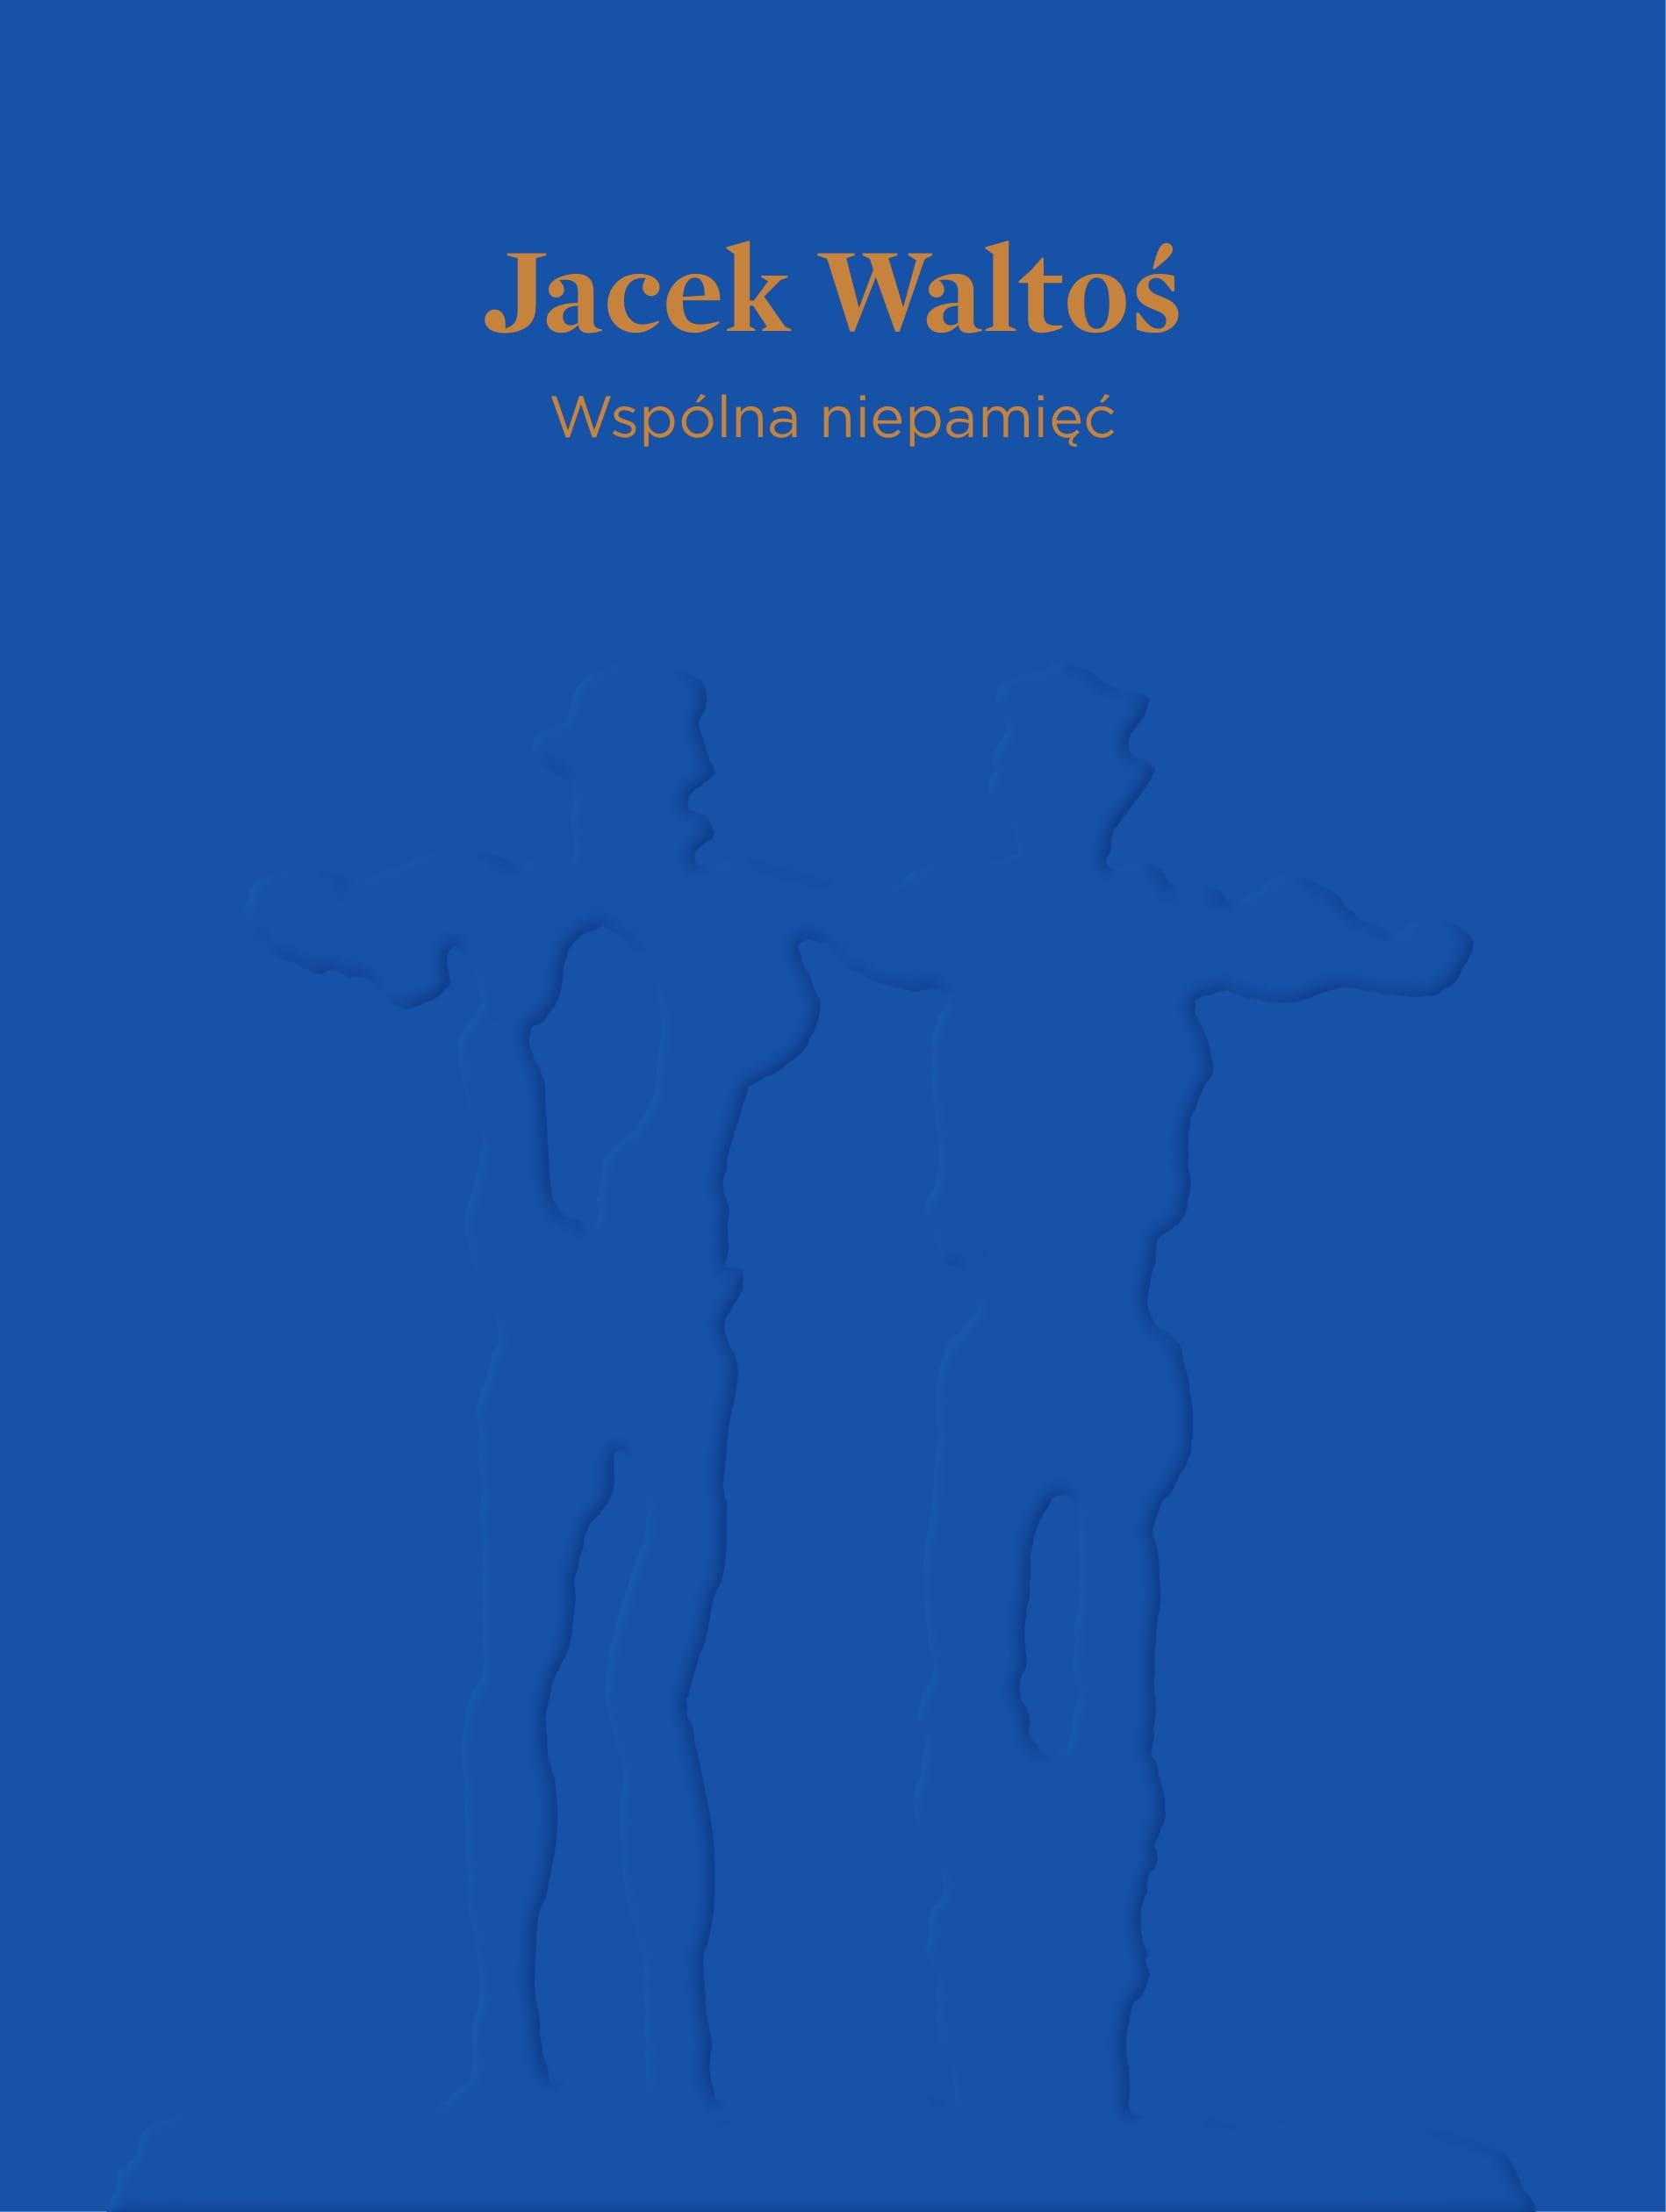 Jacek Waltoś – Wspólna niepamięć